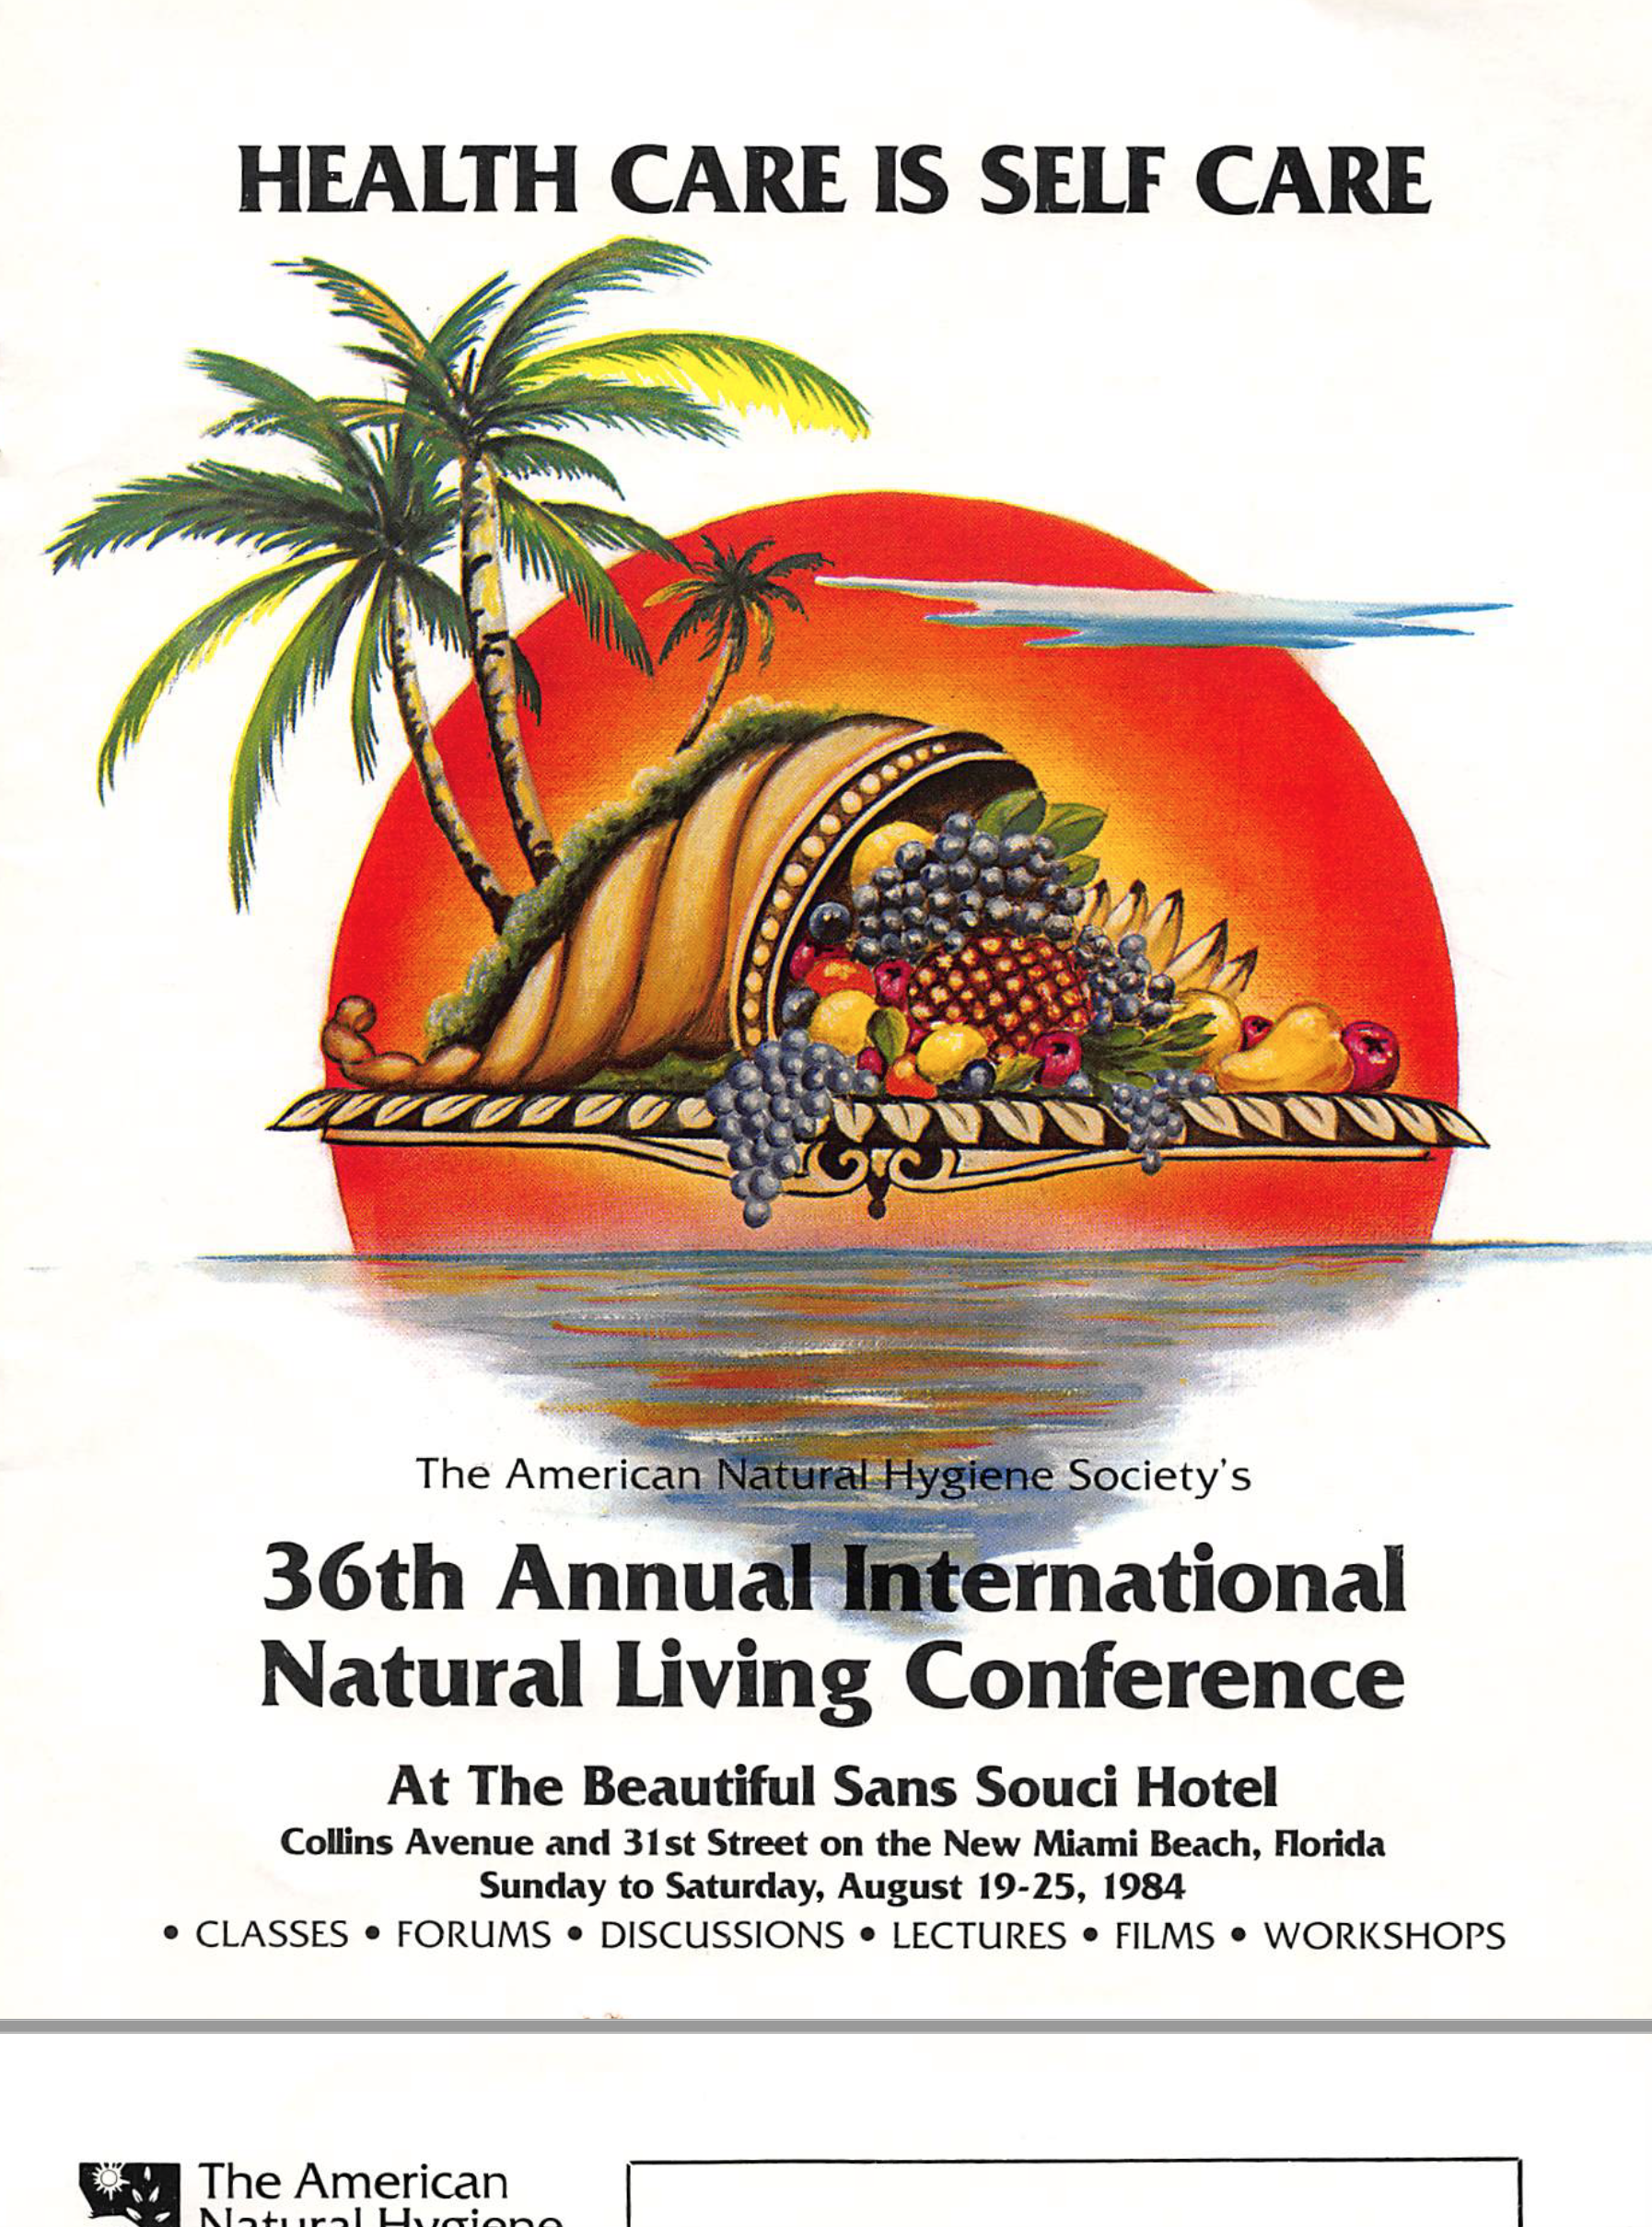 Conference Program. Miami Beach, 1984